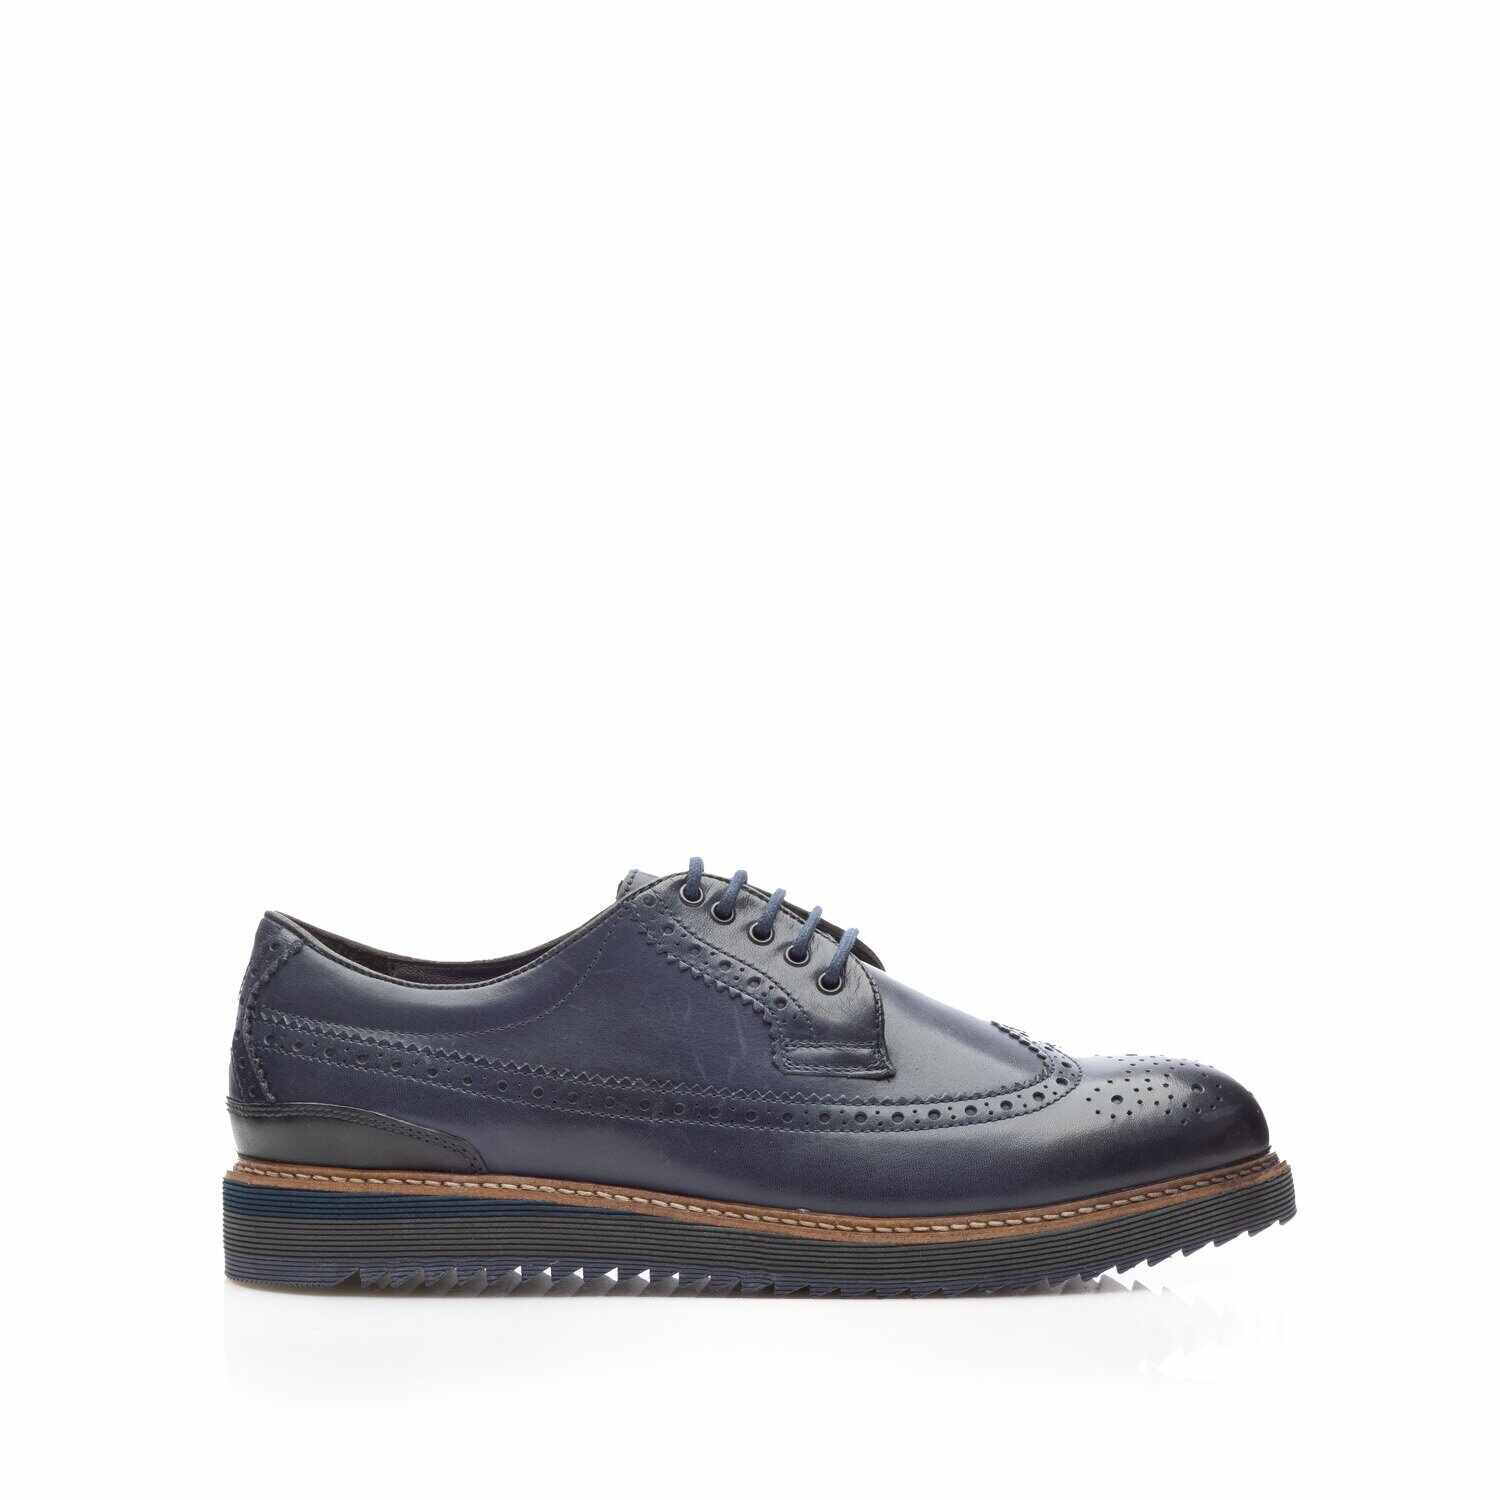 Pantofi casual bărbați din piele naturală, Leofex - 846-1 Blue Box